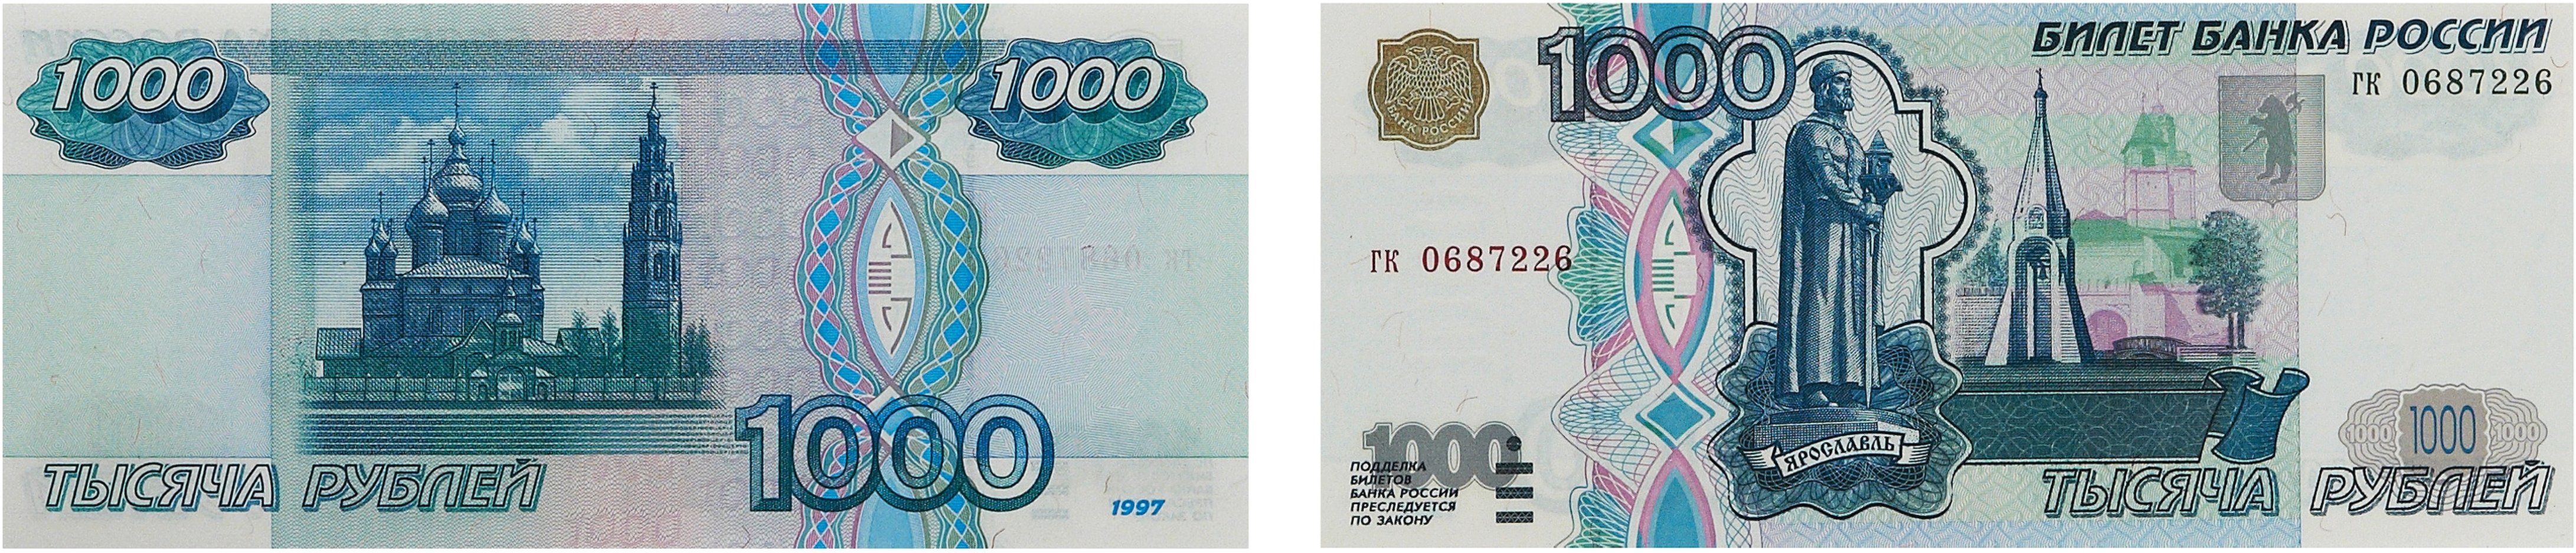 1 тыс 26 поделиться. Купюра 1000. Купюра 1000 рублей. Банкнота 1000 рублей. Купюра 1 тысяча.